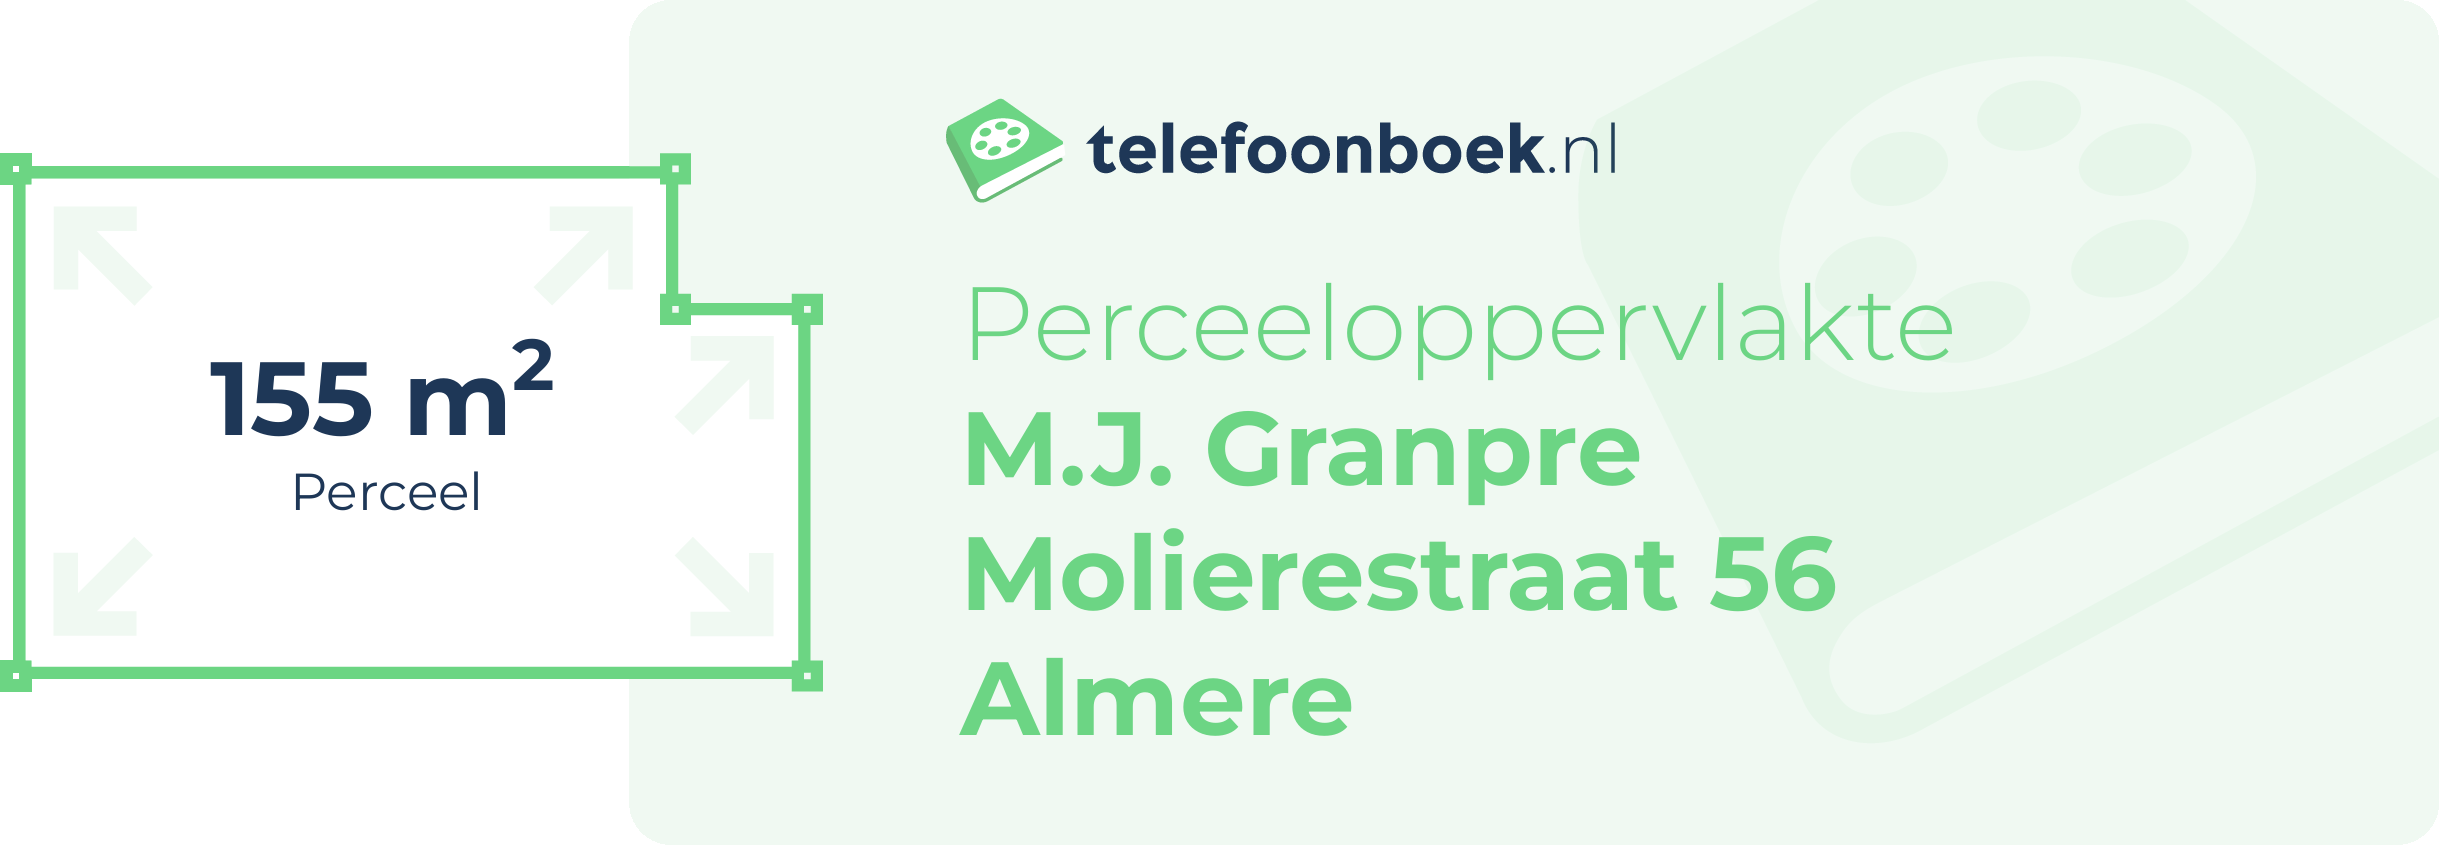 Perceeloppervlakte M.J. Granpre Molierestraat 56 Almere